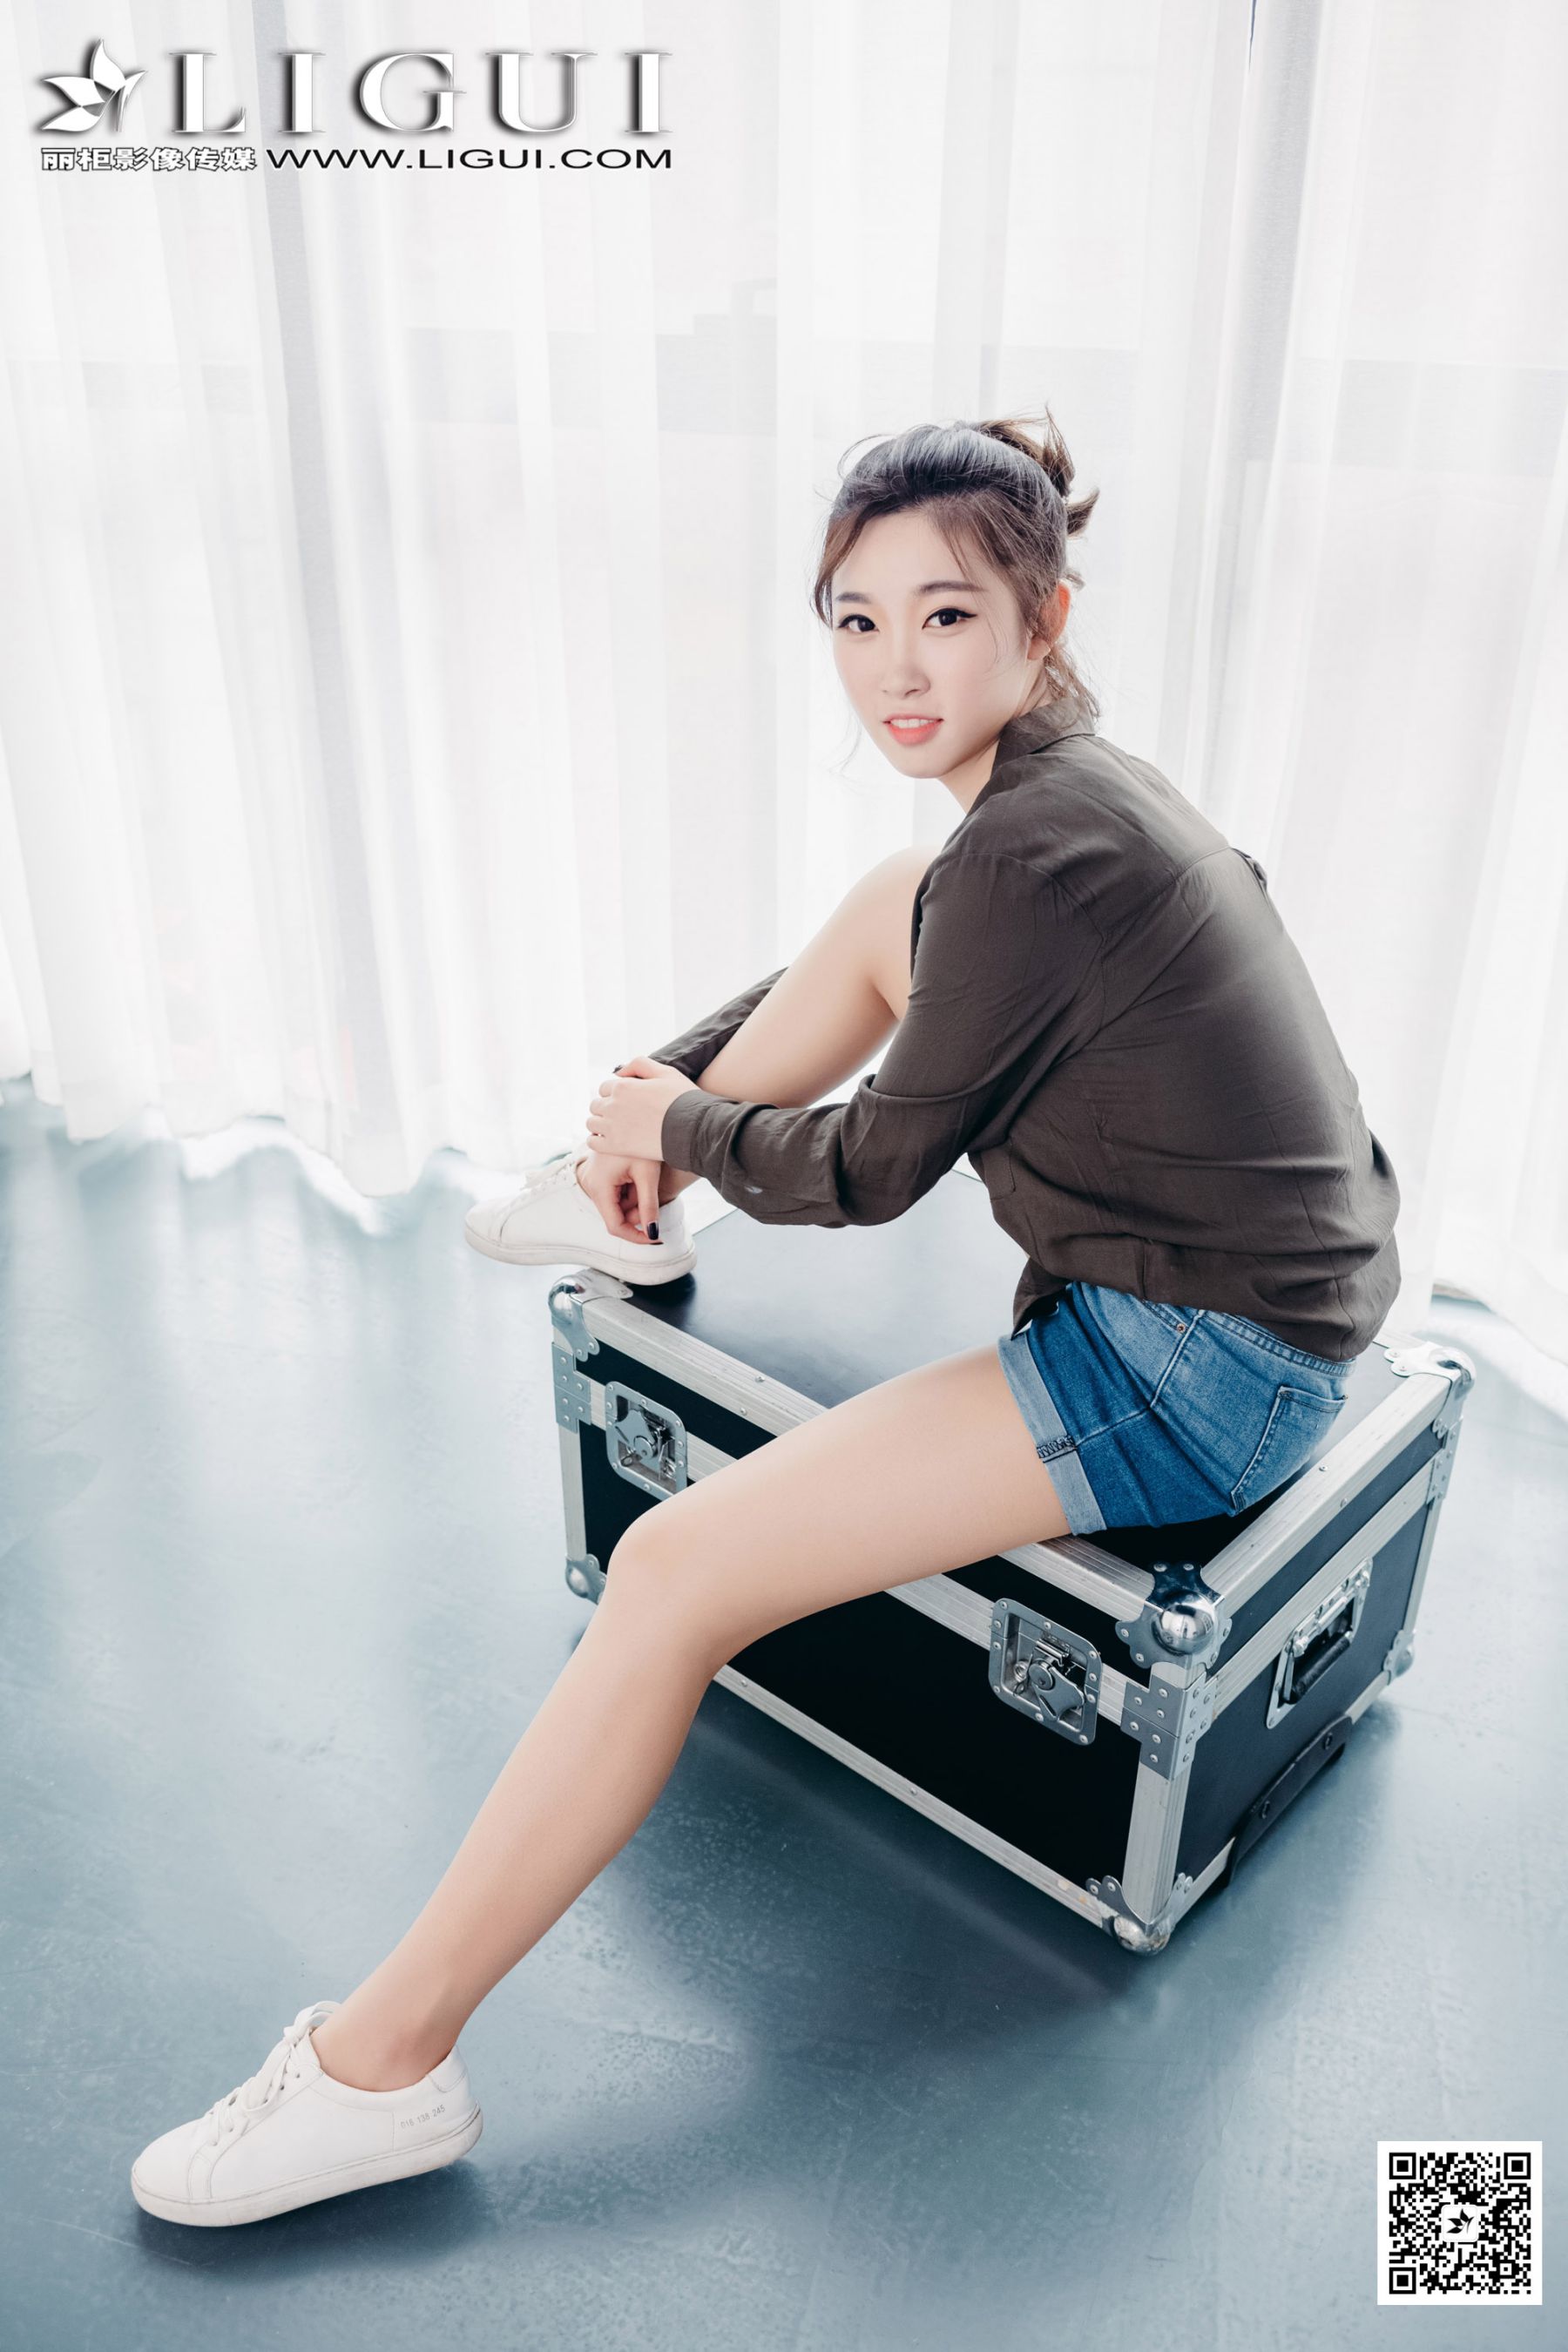 Model Xiao Xiao "Sweet Girl in Hot Pants" [Li Cabinet] Page 6 No.5b3a10